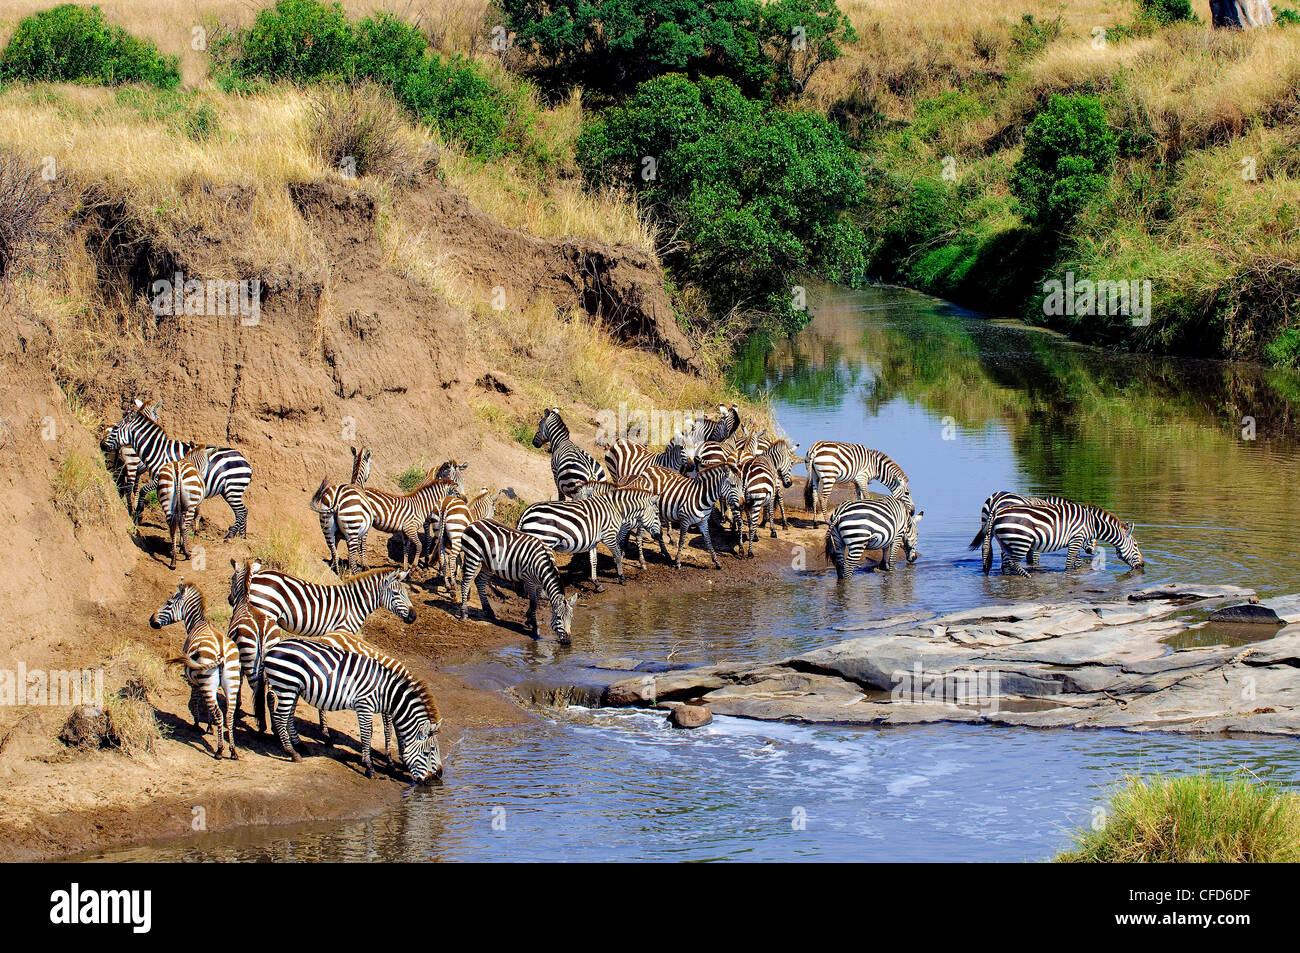 Les zèbres des plaines (Equus burchelli) de l'alcool à titre temporaire, de la rivière du Nord, la réserve de Masai Mara, Kenya, plaines du Serengeti Afrique de l'Est Banque D'Images